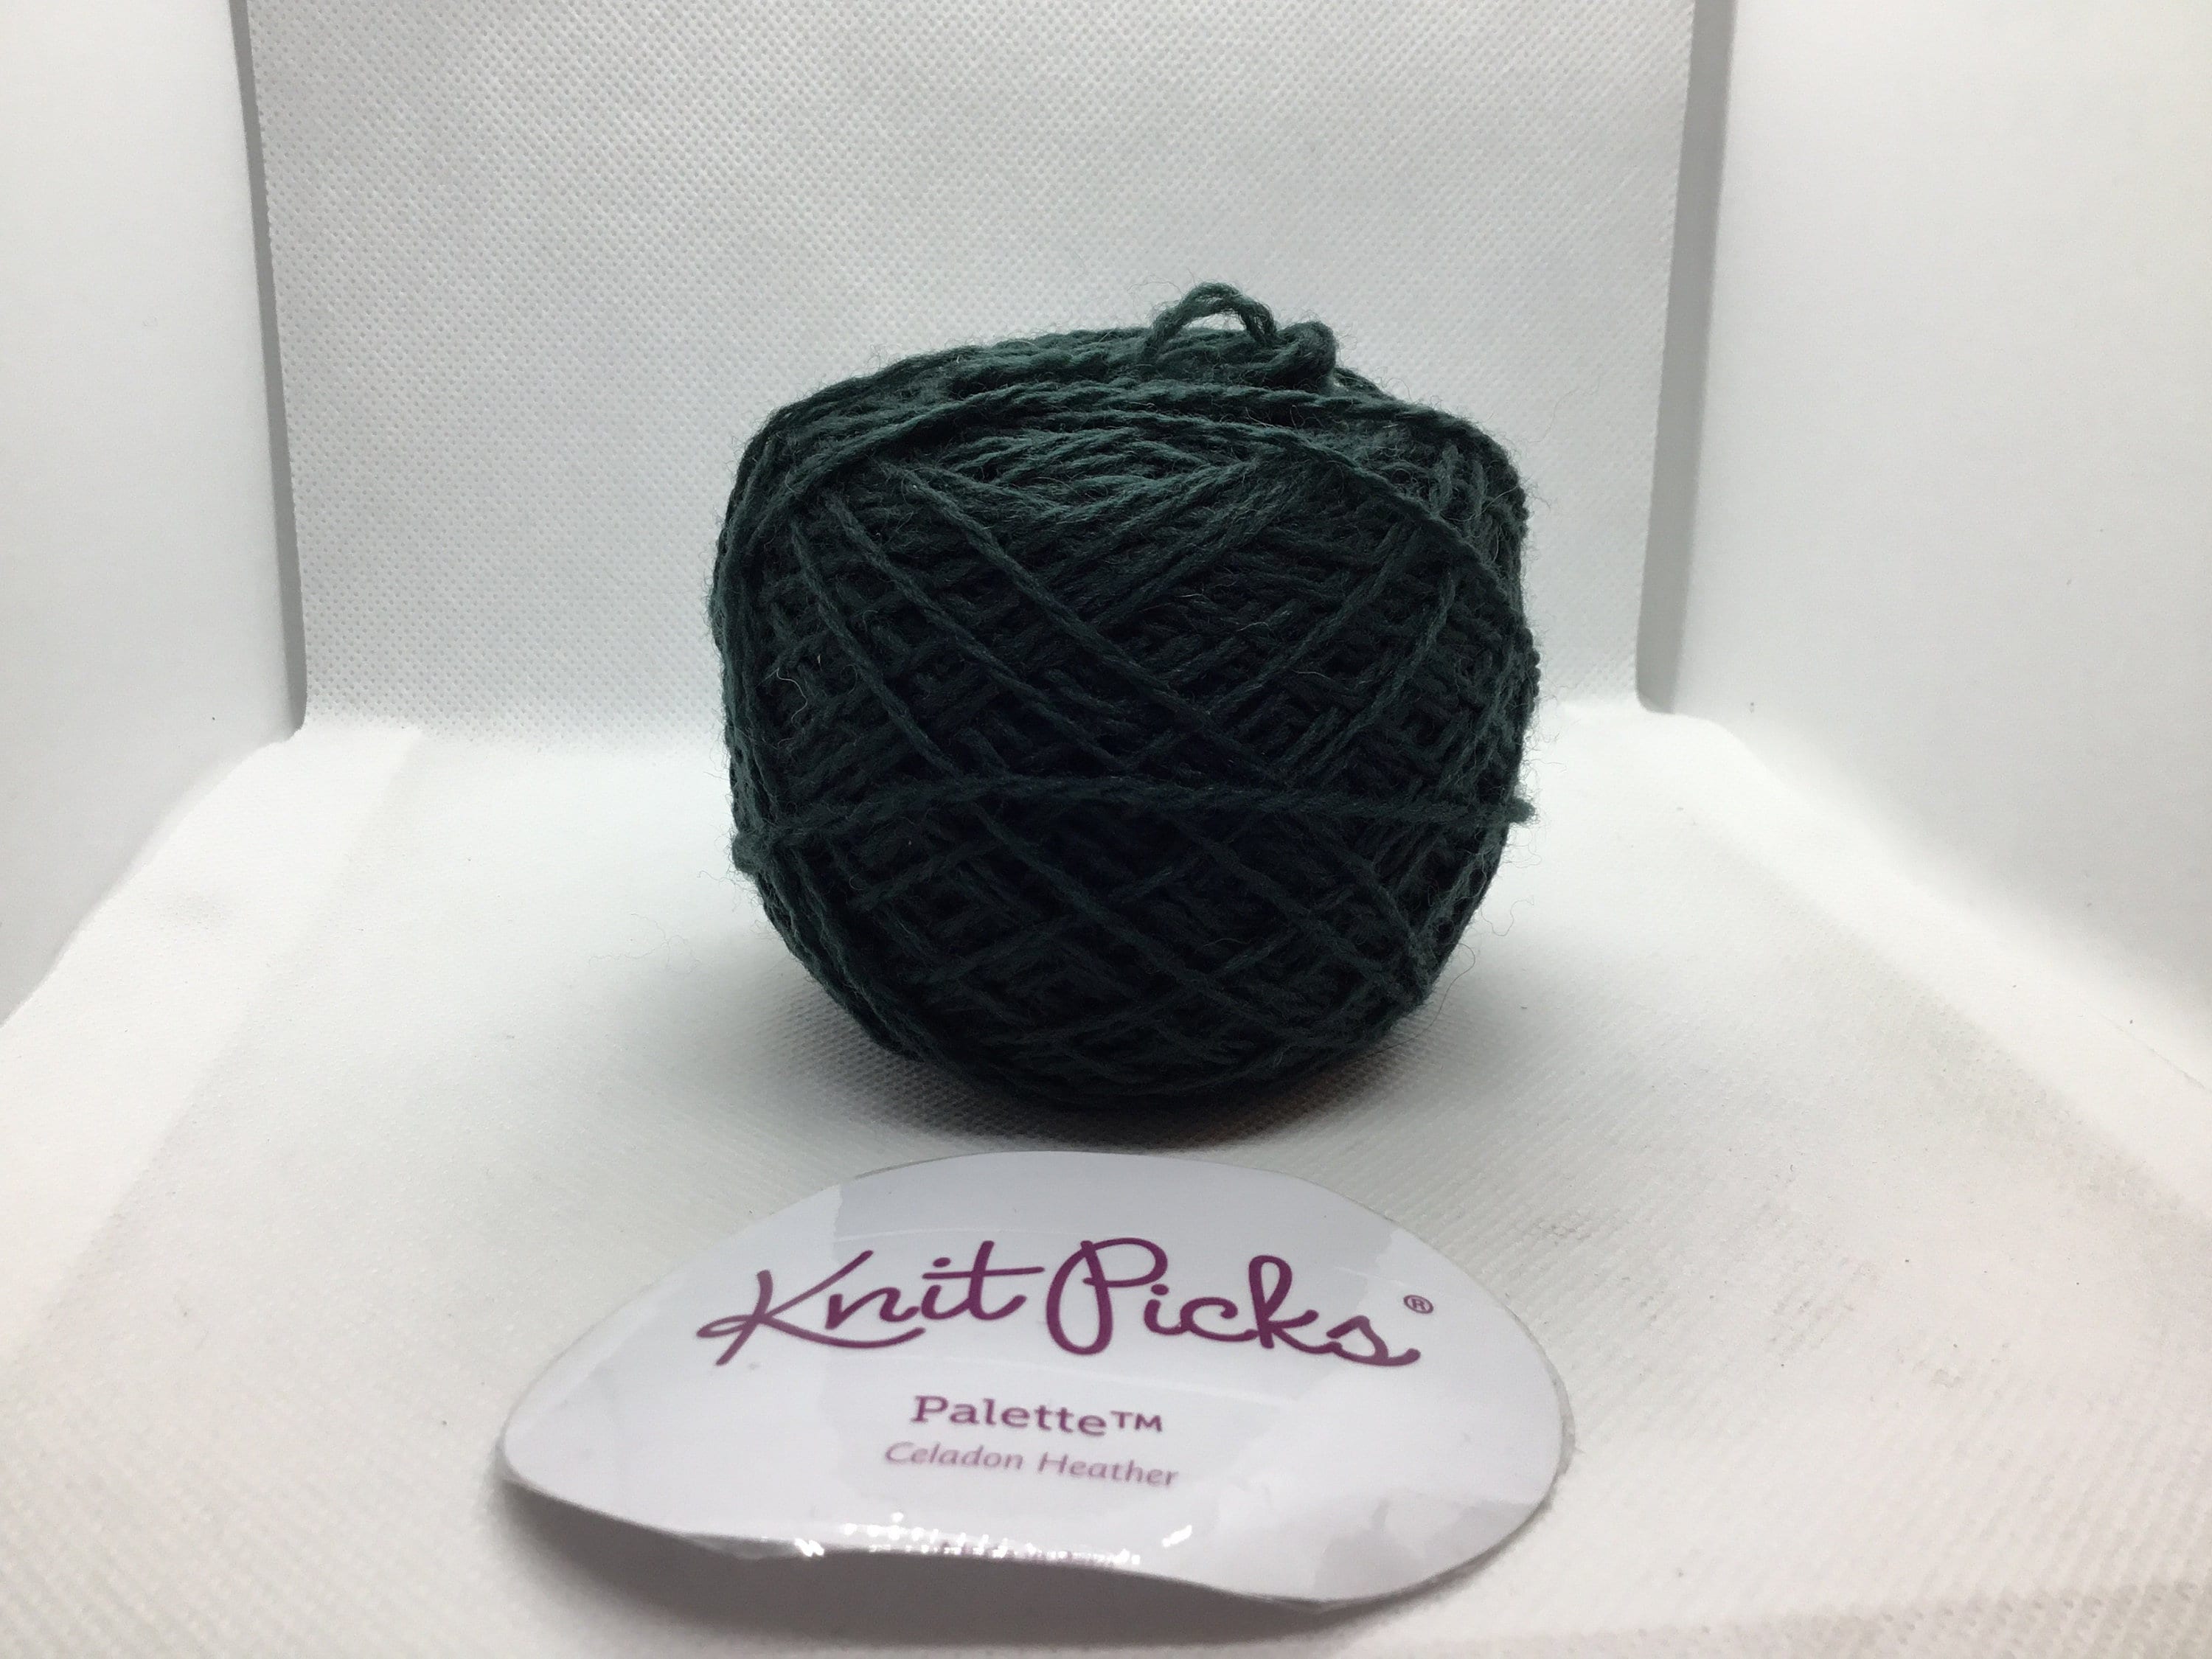 Knit Picks Palette 100% wool fingerling weight yarn. Color Celadon Heather.  Knit, Crochet